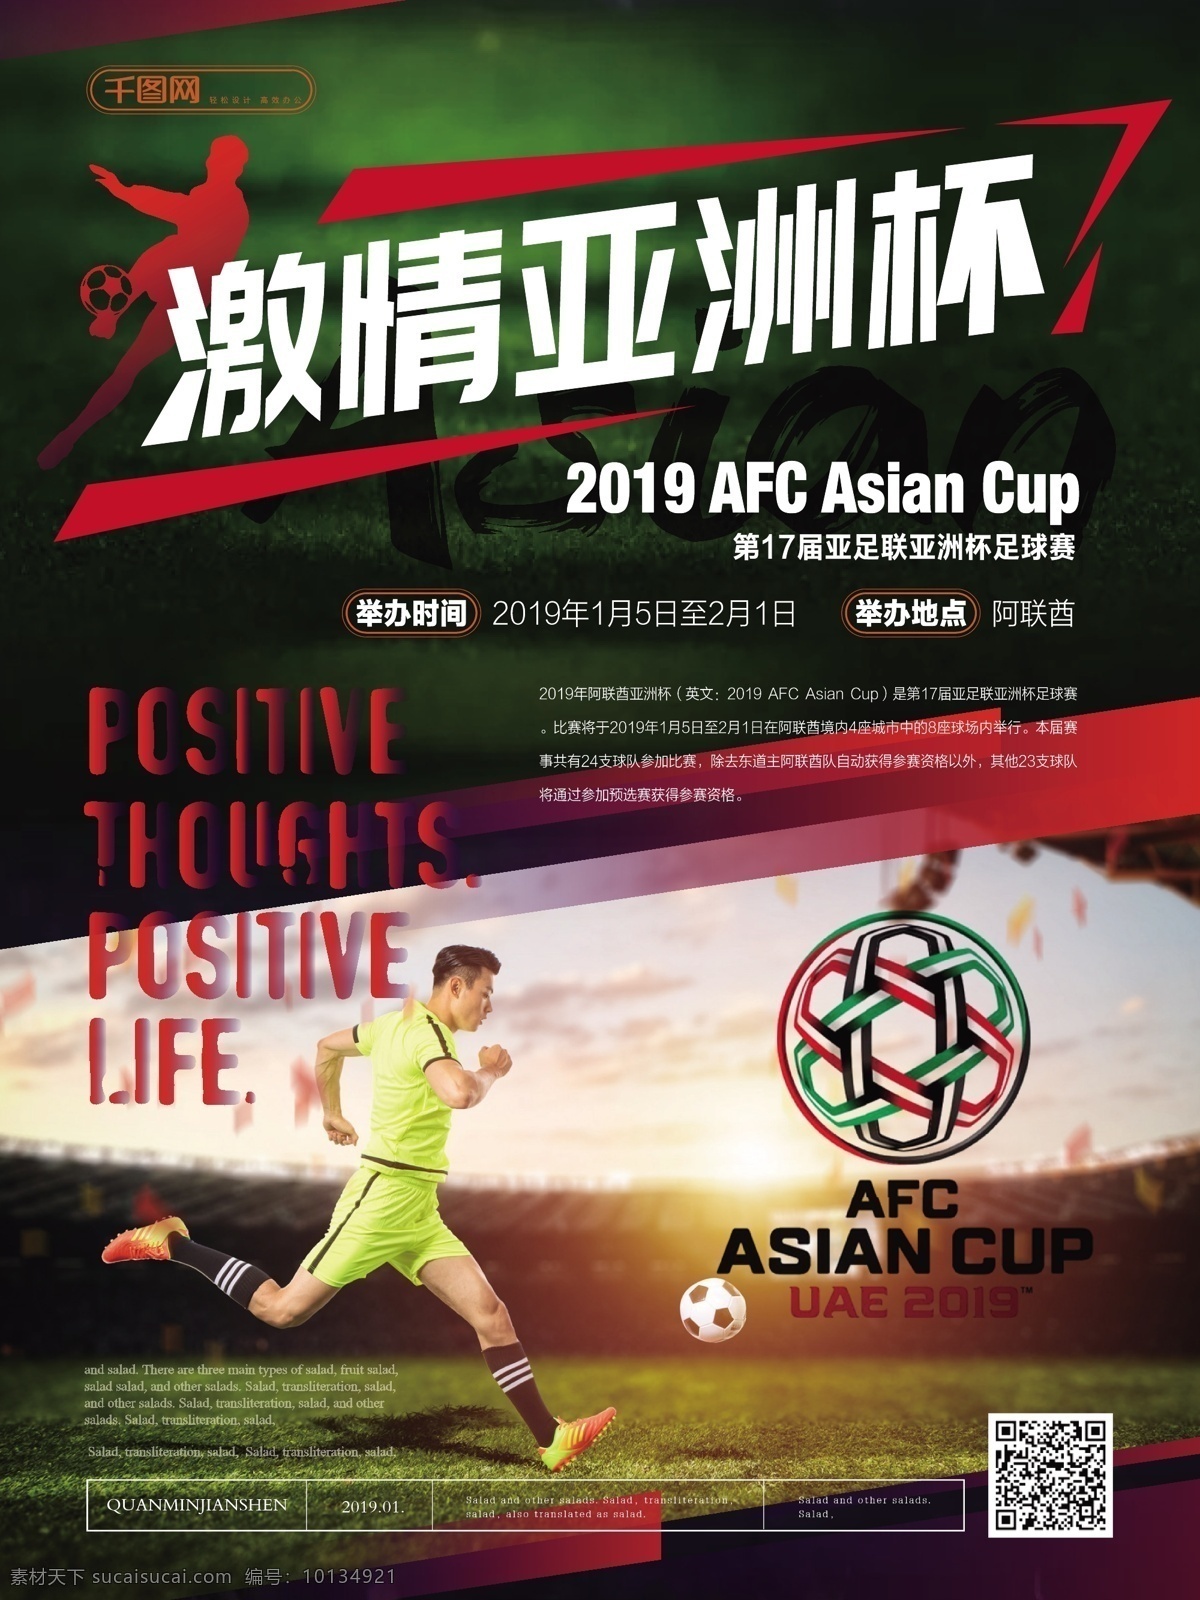 简约 大气 激情 亚洲杯 海报 简约风 激情亚洲杯 主题 体育 足球赛 宣传